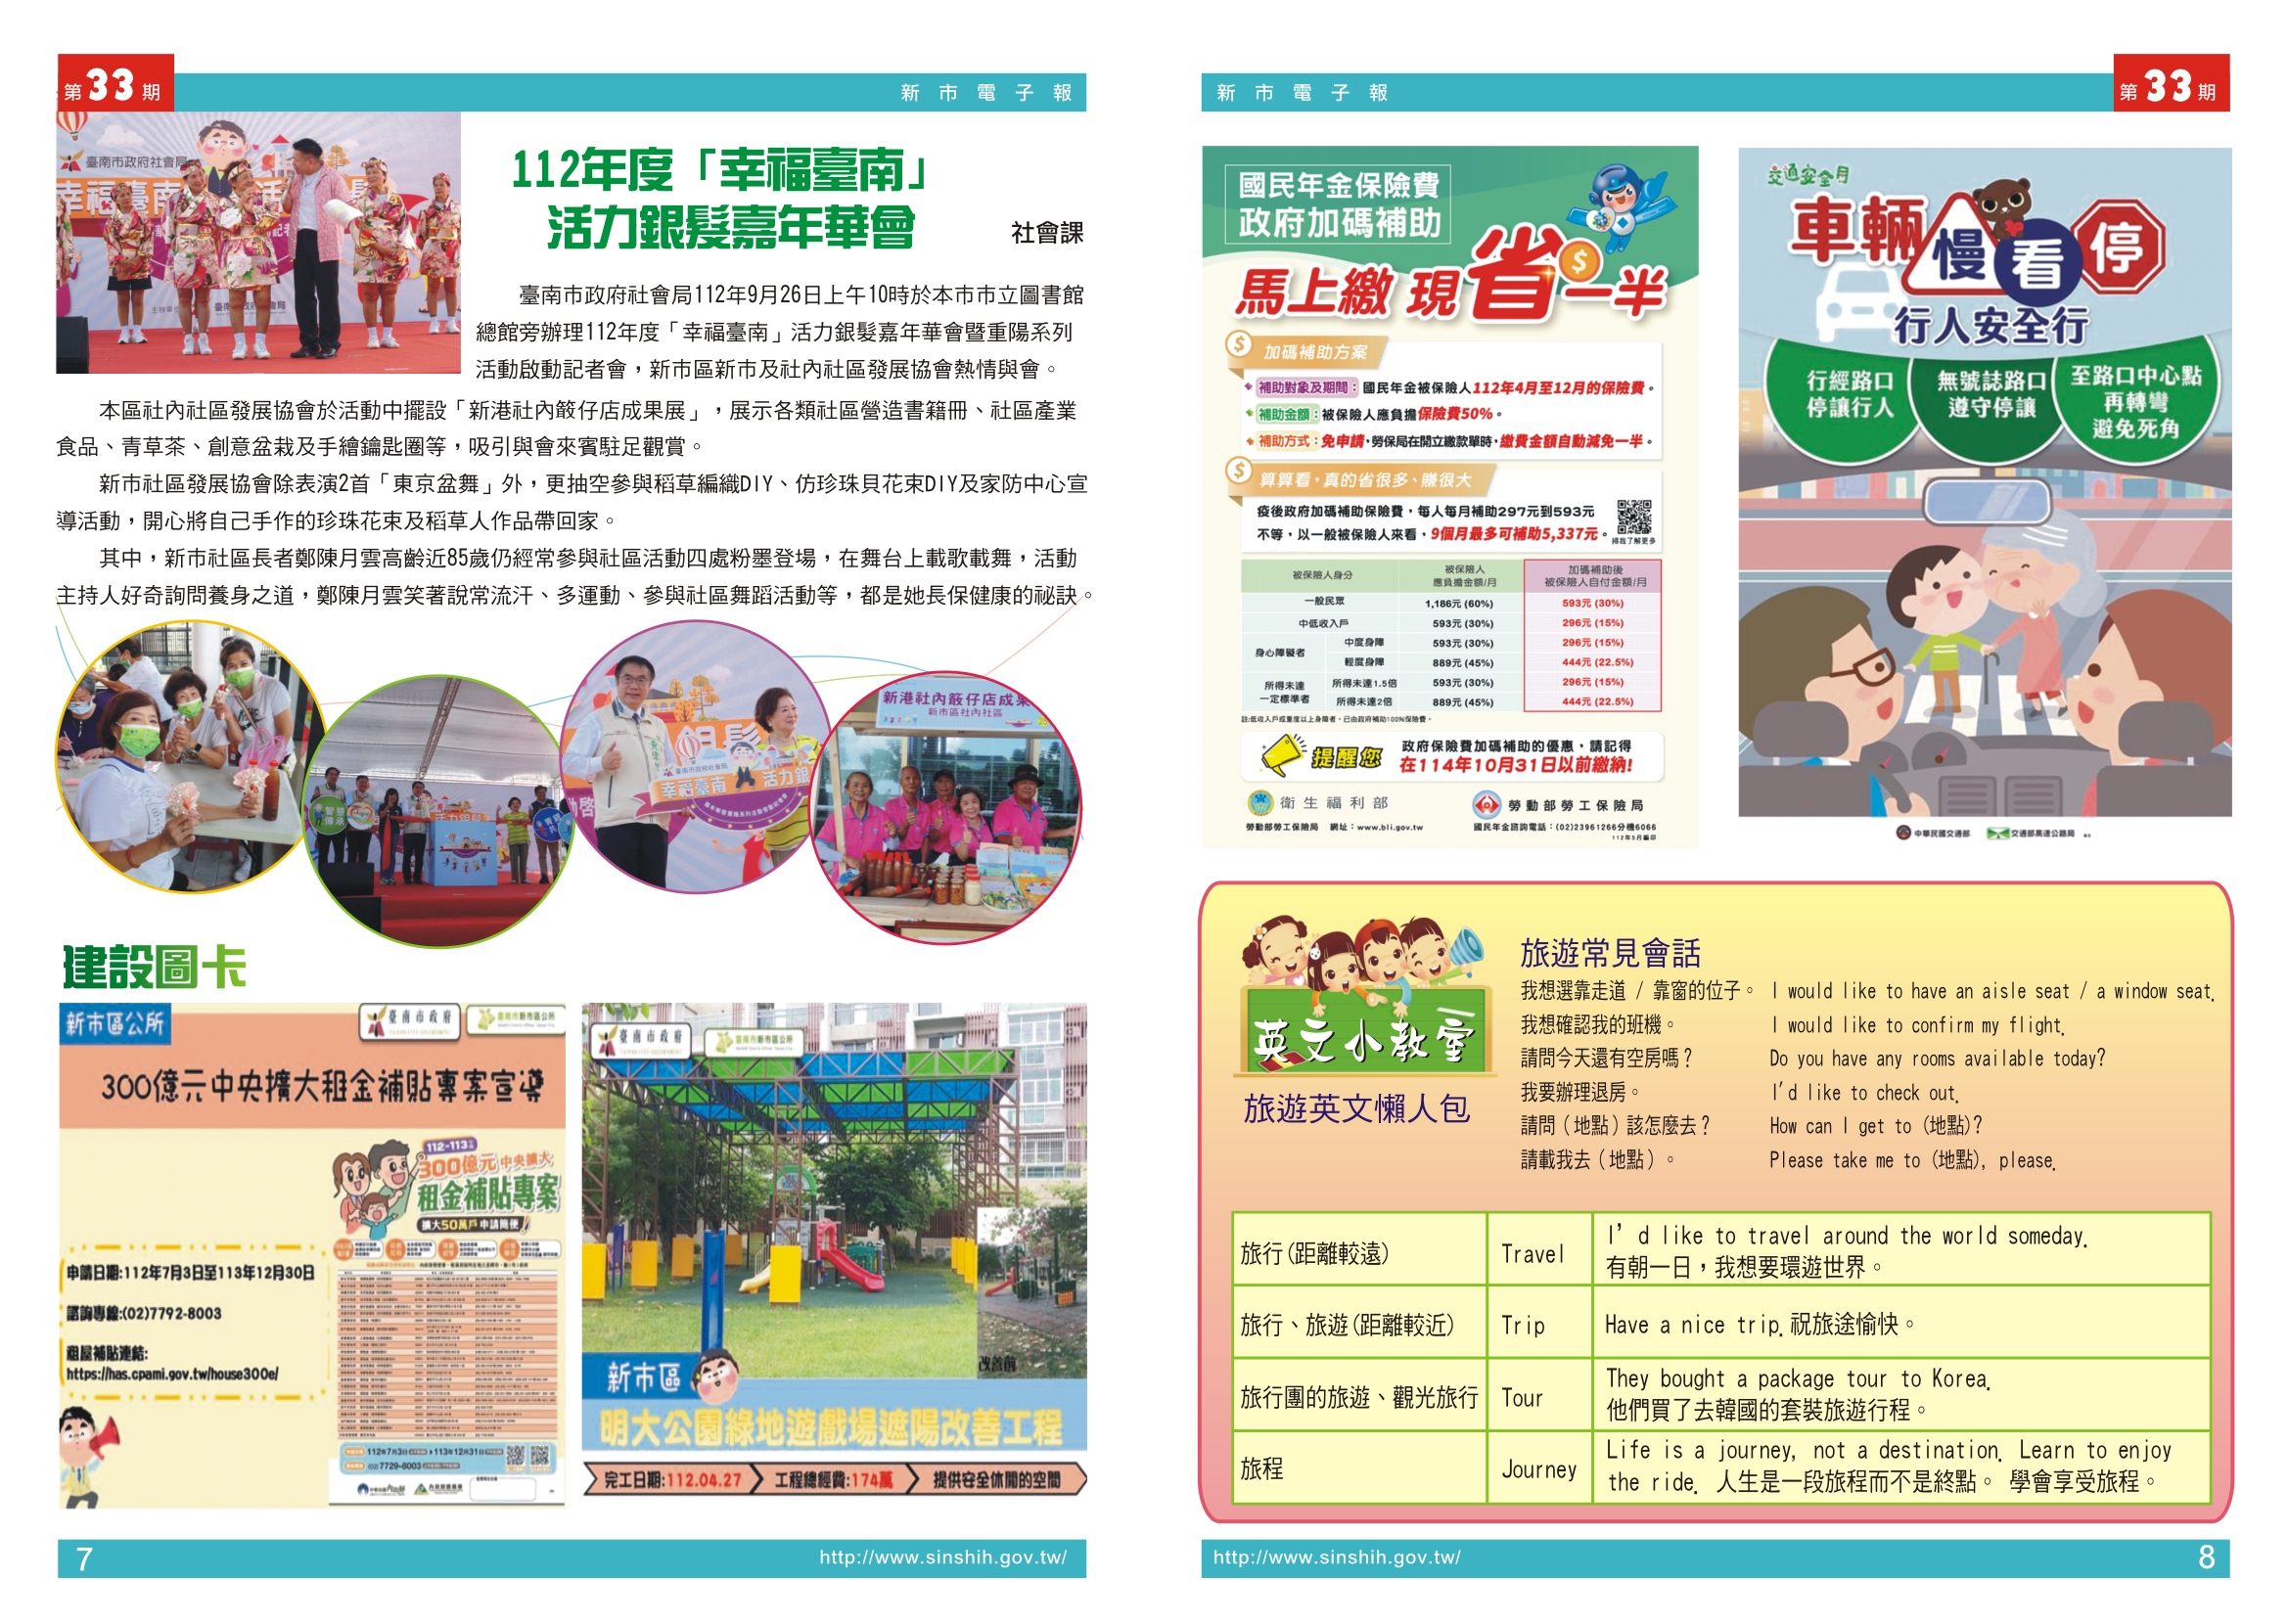 1、112年度「幸福臺南」活力銀髮嘉年華會2、建設圖卡3、國民年金宣導、車輛慢看停行人安全行4.英文小教室